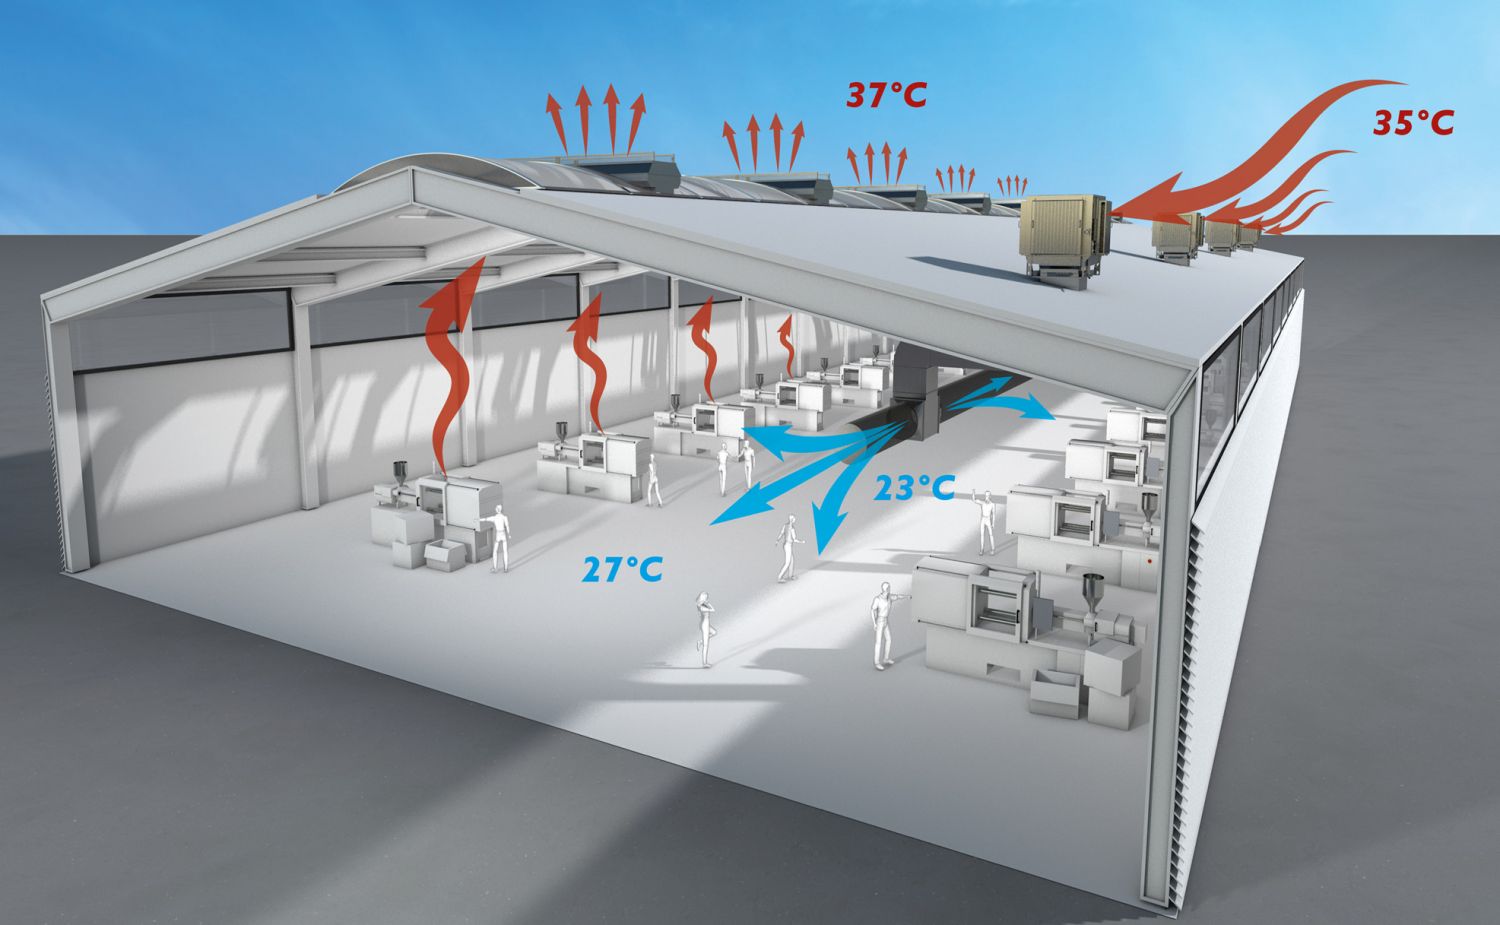 Adiabatické chladenie predstavuje účinnú a efektívnu alternatívu klasickej klimatizácie